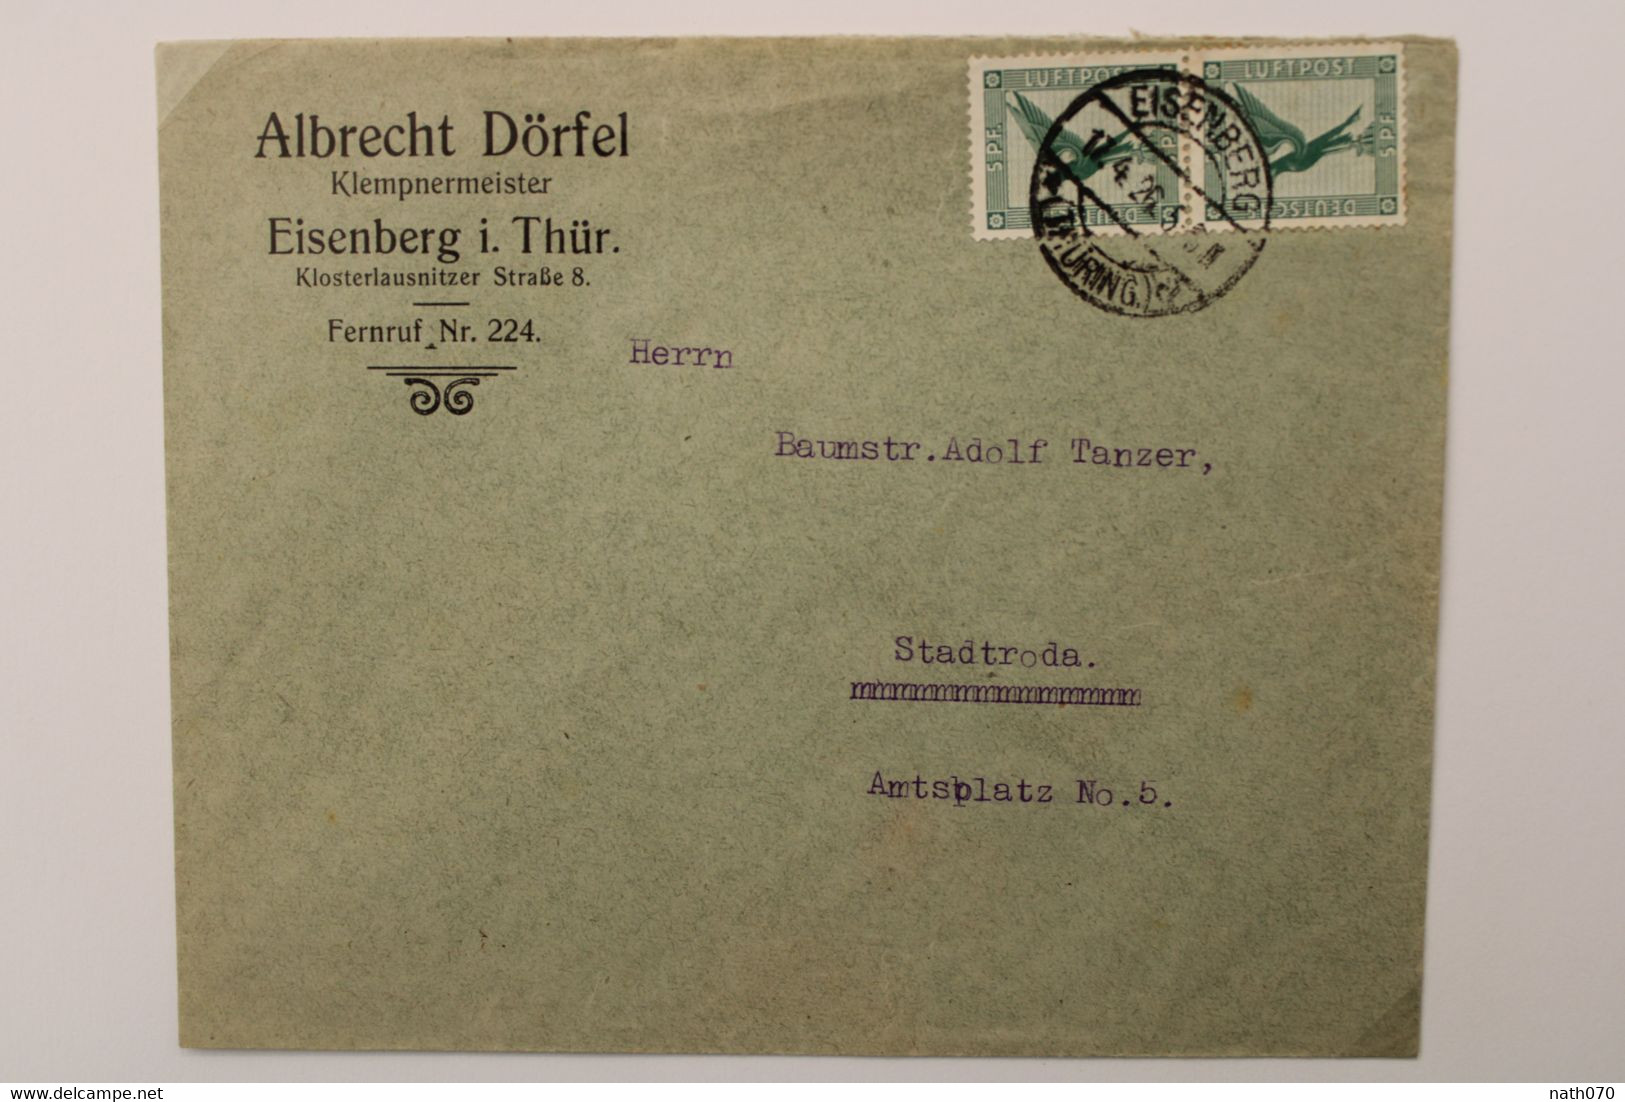 1926 Eisenberg Stadtroda Flugpost Paar Luftpost Air Mail Poste Aerienne Cover Deutsches Reich Germany Allemagne Mi 378 - Briefe U. Dokumente